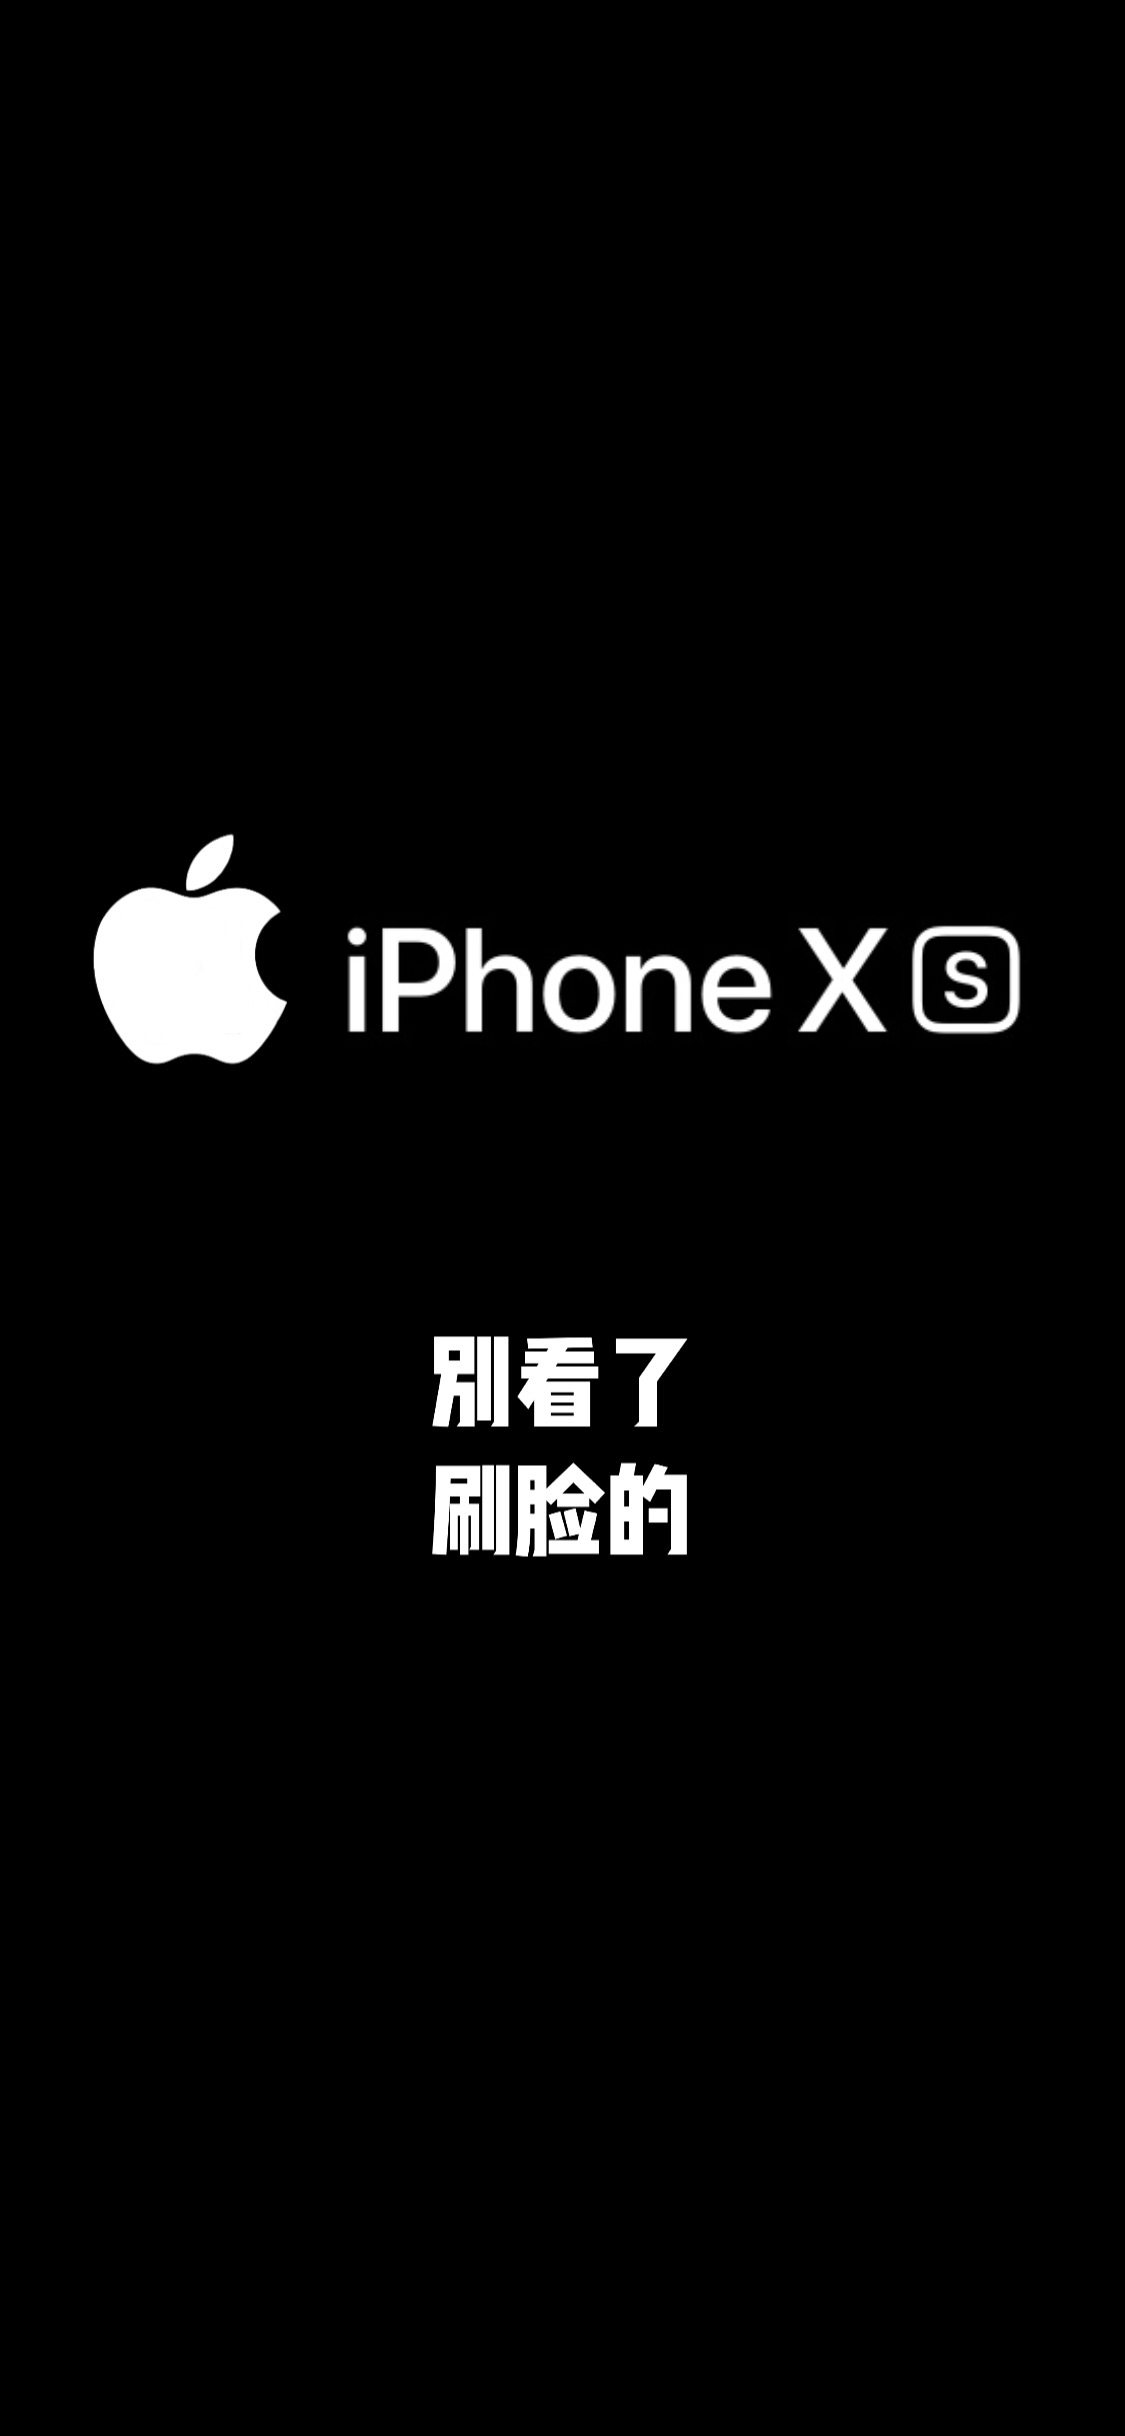 24张适合iphone Xr Xs壁纸推荐苹果手机专用2k高清壁纸大全 电脑百事网